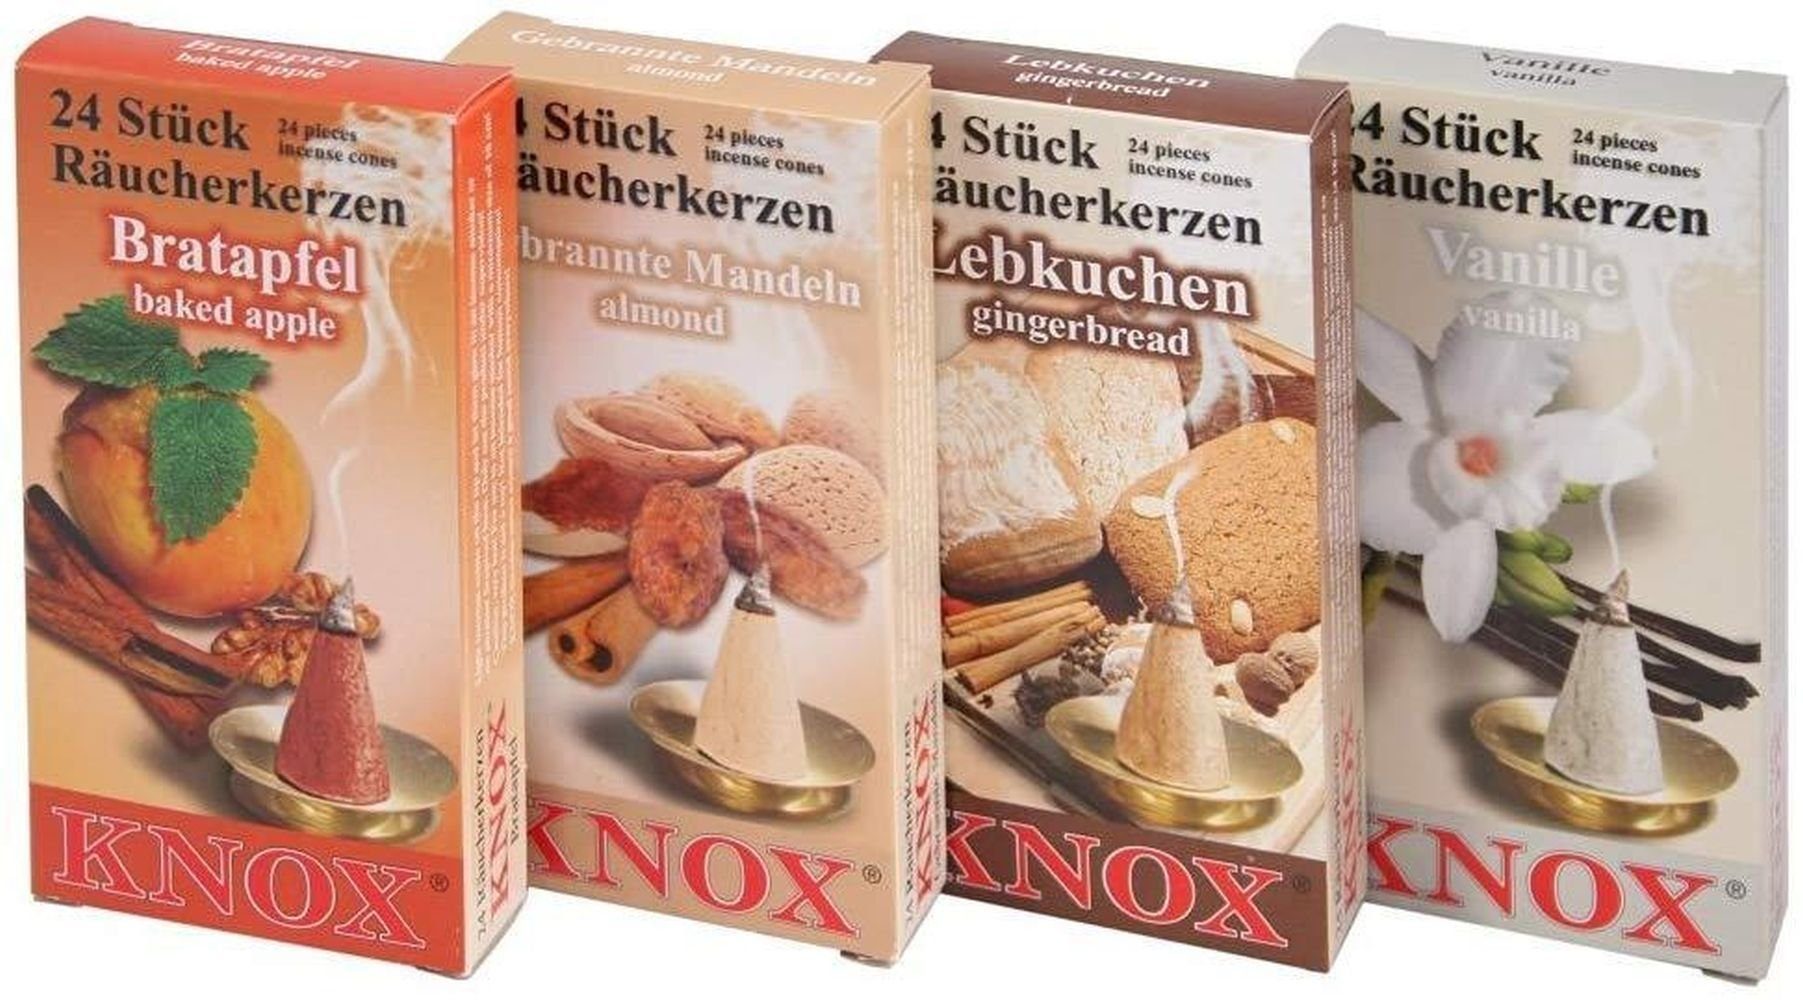 KNOX Räuchermännchen 4er Set Räucherkerzen Bratapfel, Gebrannte Mandeln, Lebkuchen,Vanille